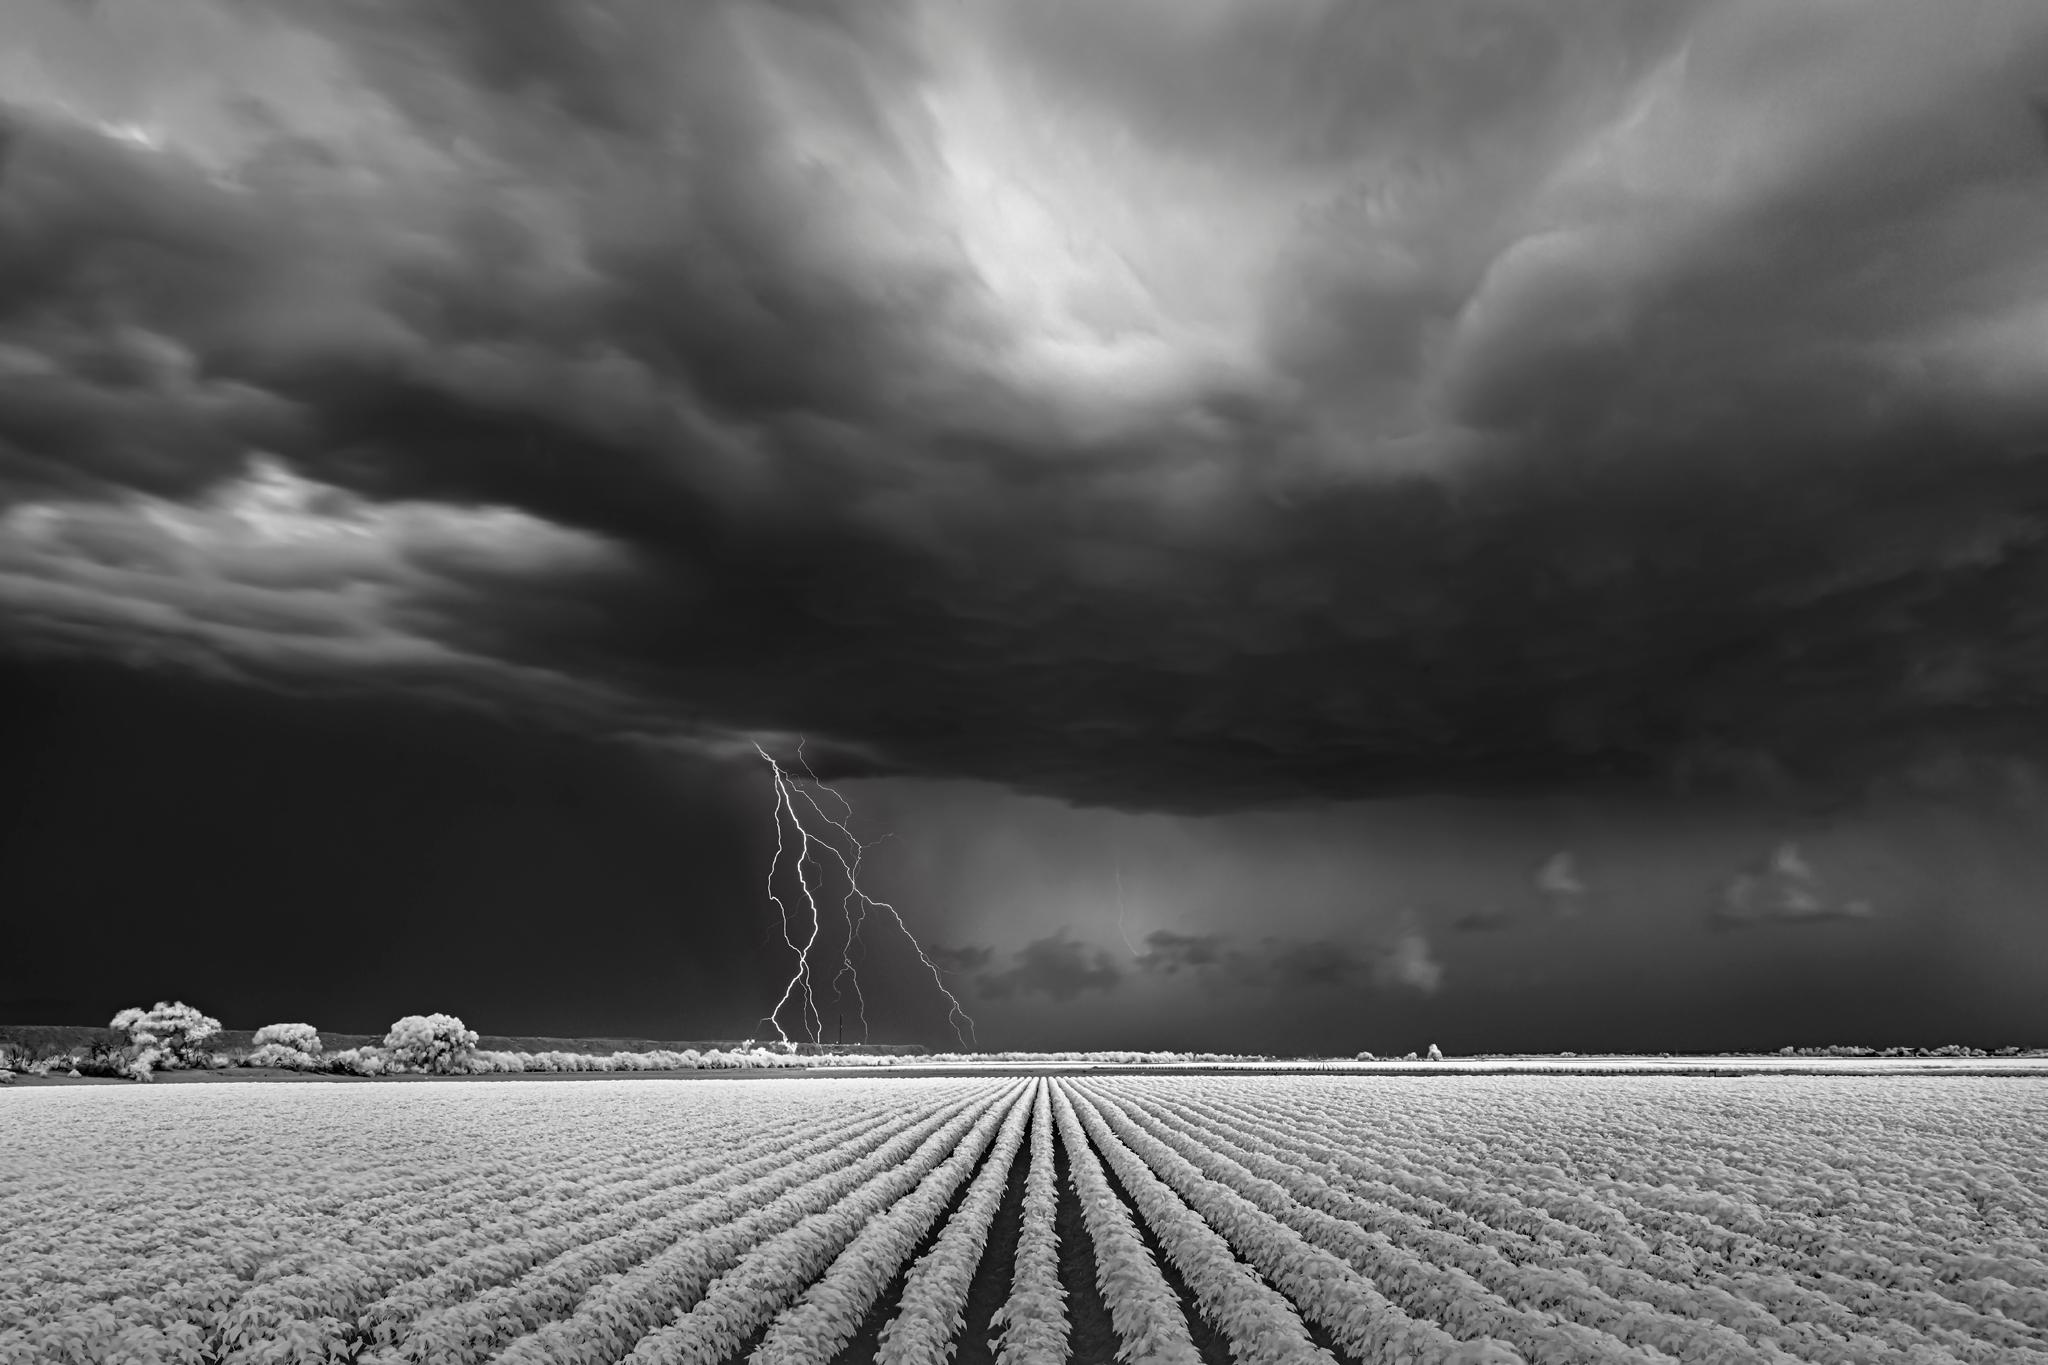 Mitch Dobrowner Landscape Photograph – Lightning/Cotton Field, Fotografie in limitierter Auflage, archivtauglich, signiert 